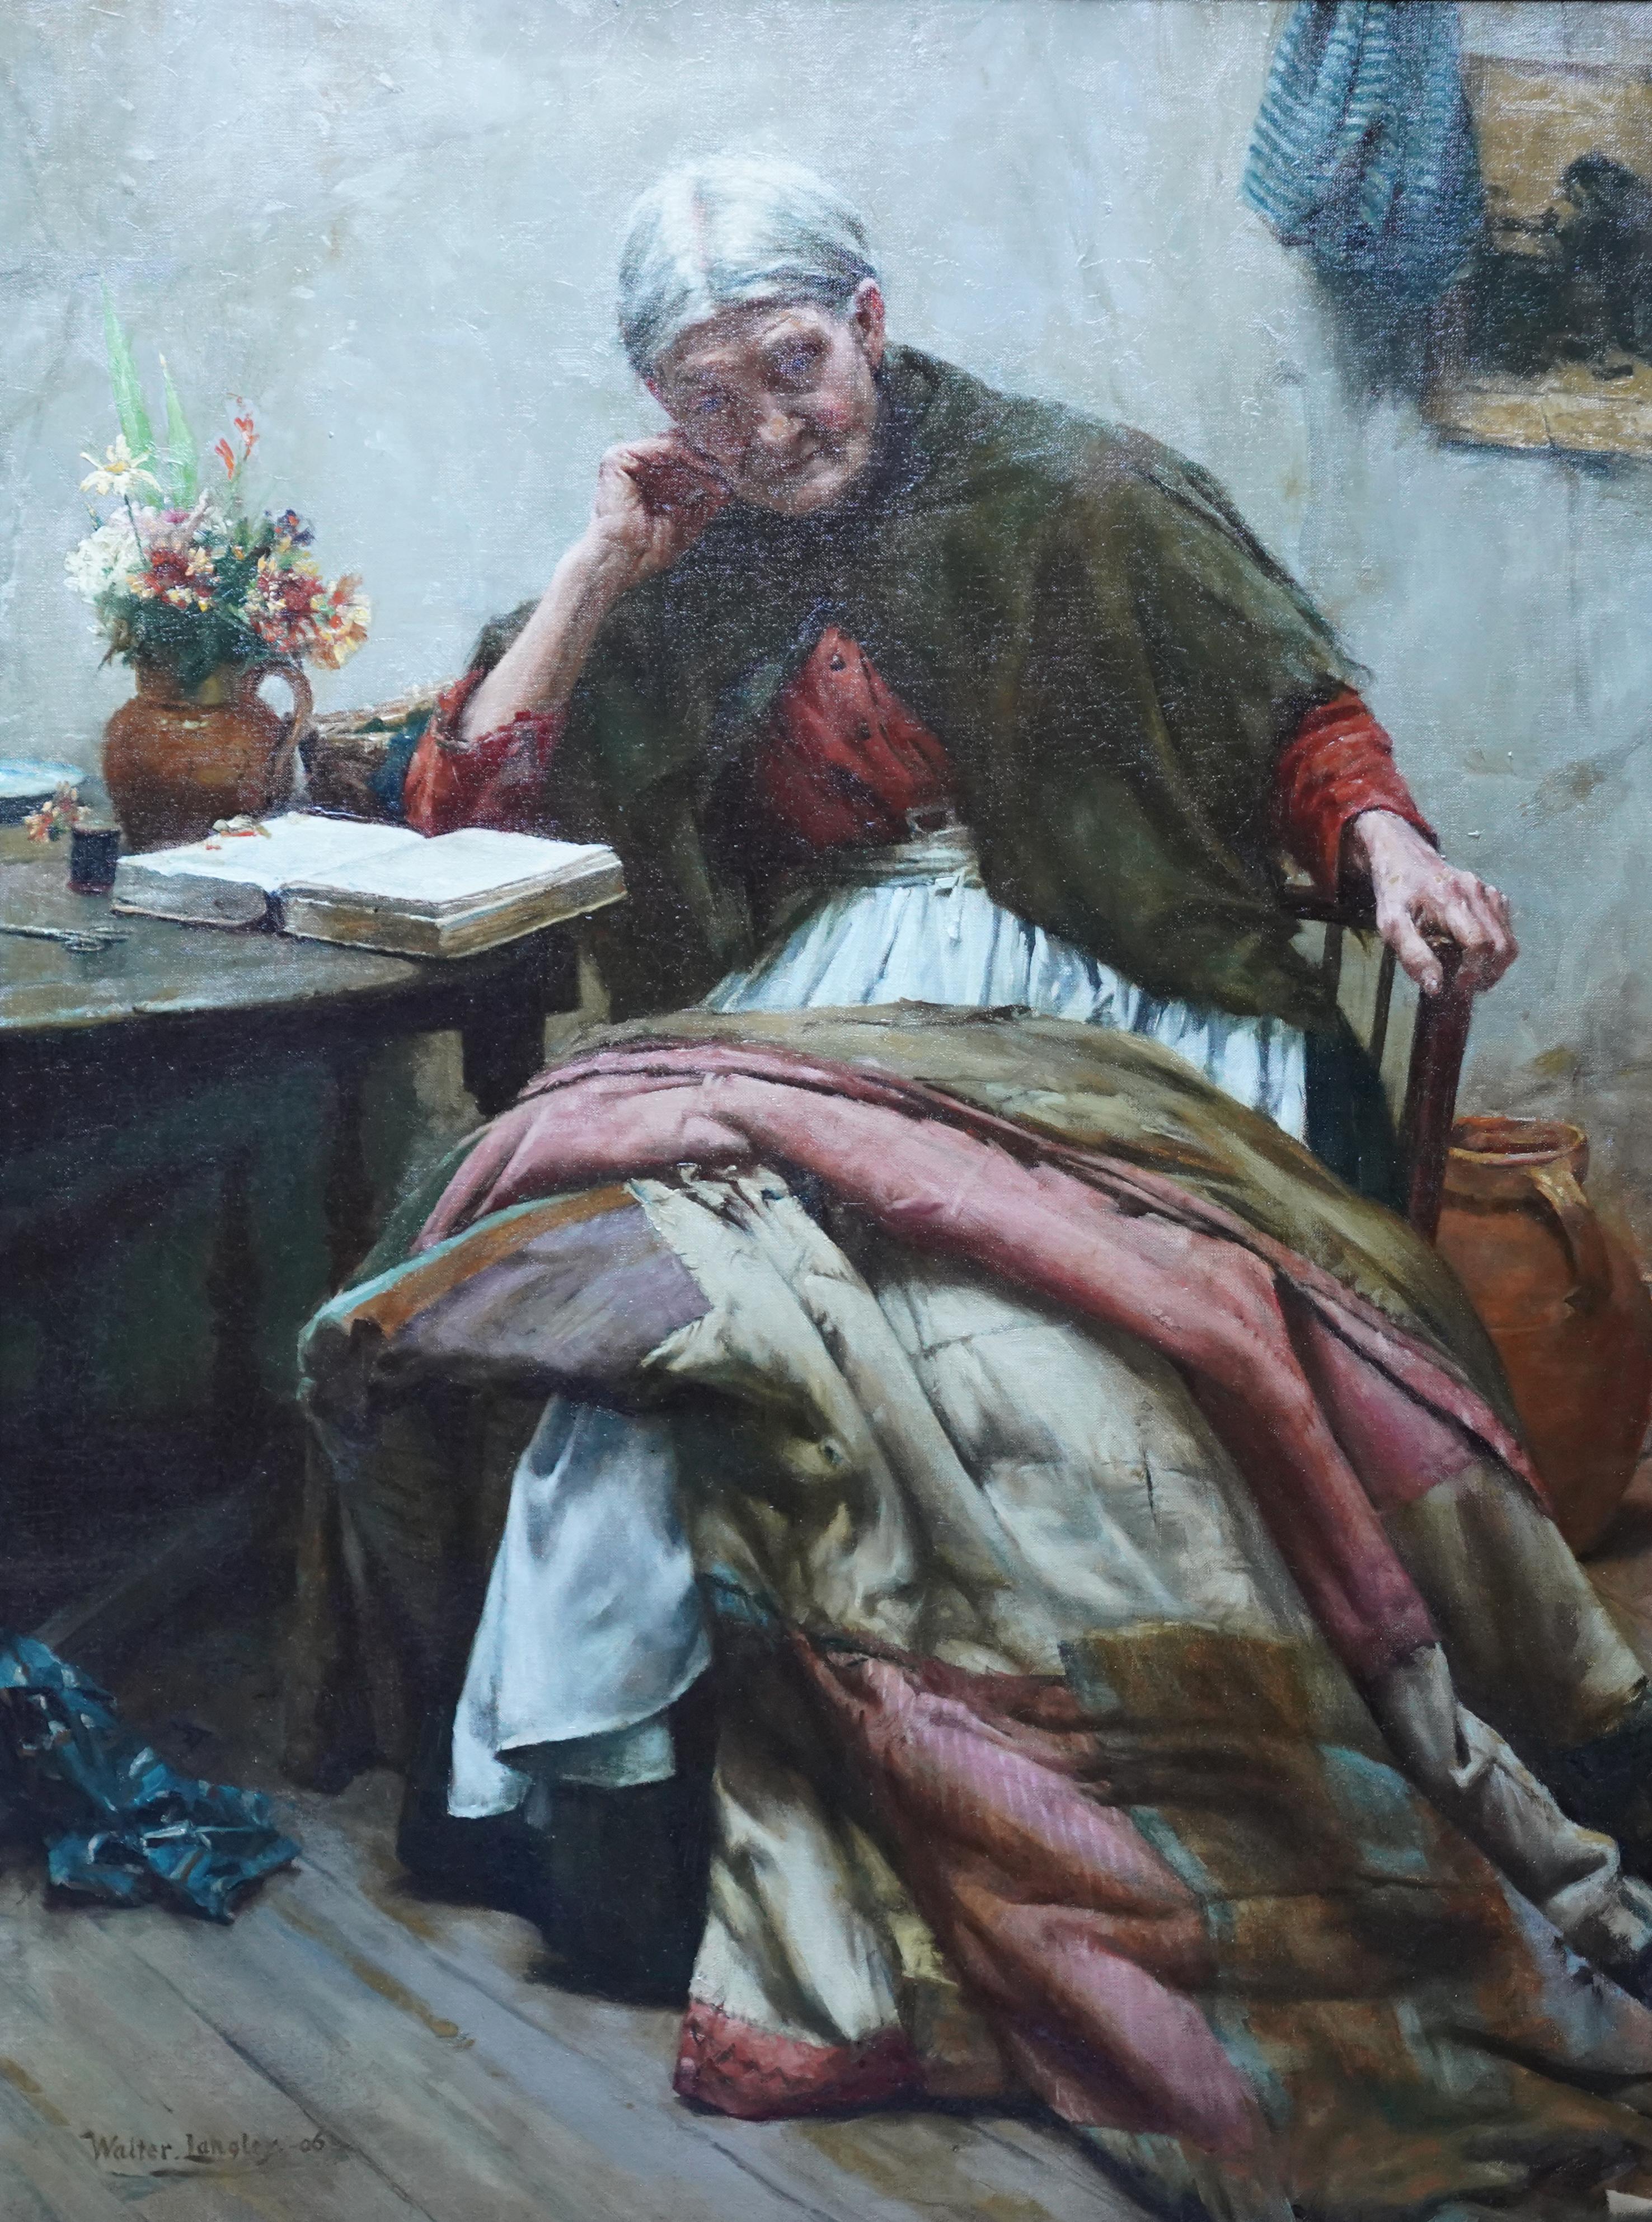 The Evening of Life – Interieurporträt – Britisches Newlyn Sch-Ölgemälde, 1906  – Painting von Walter Langley